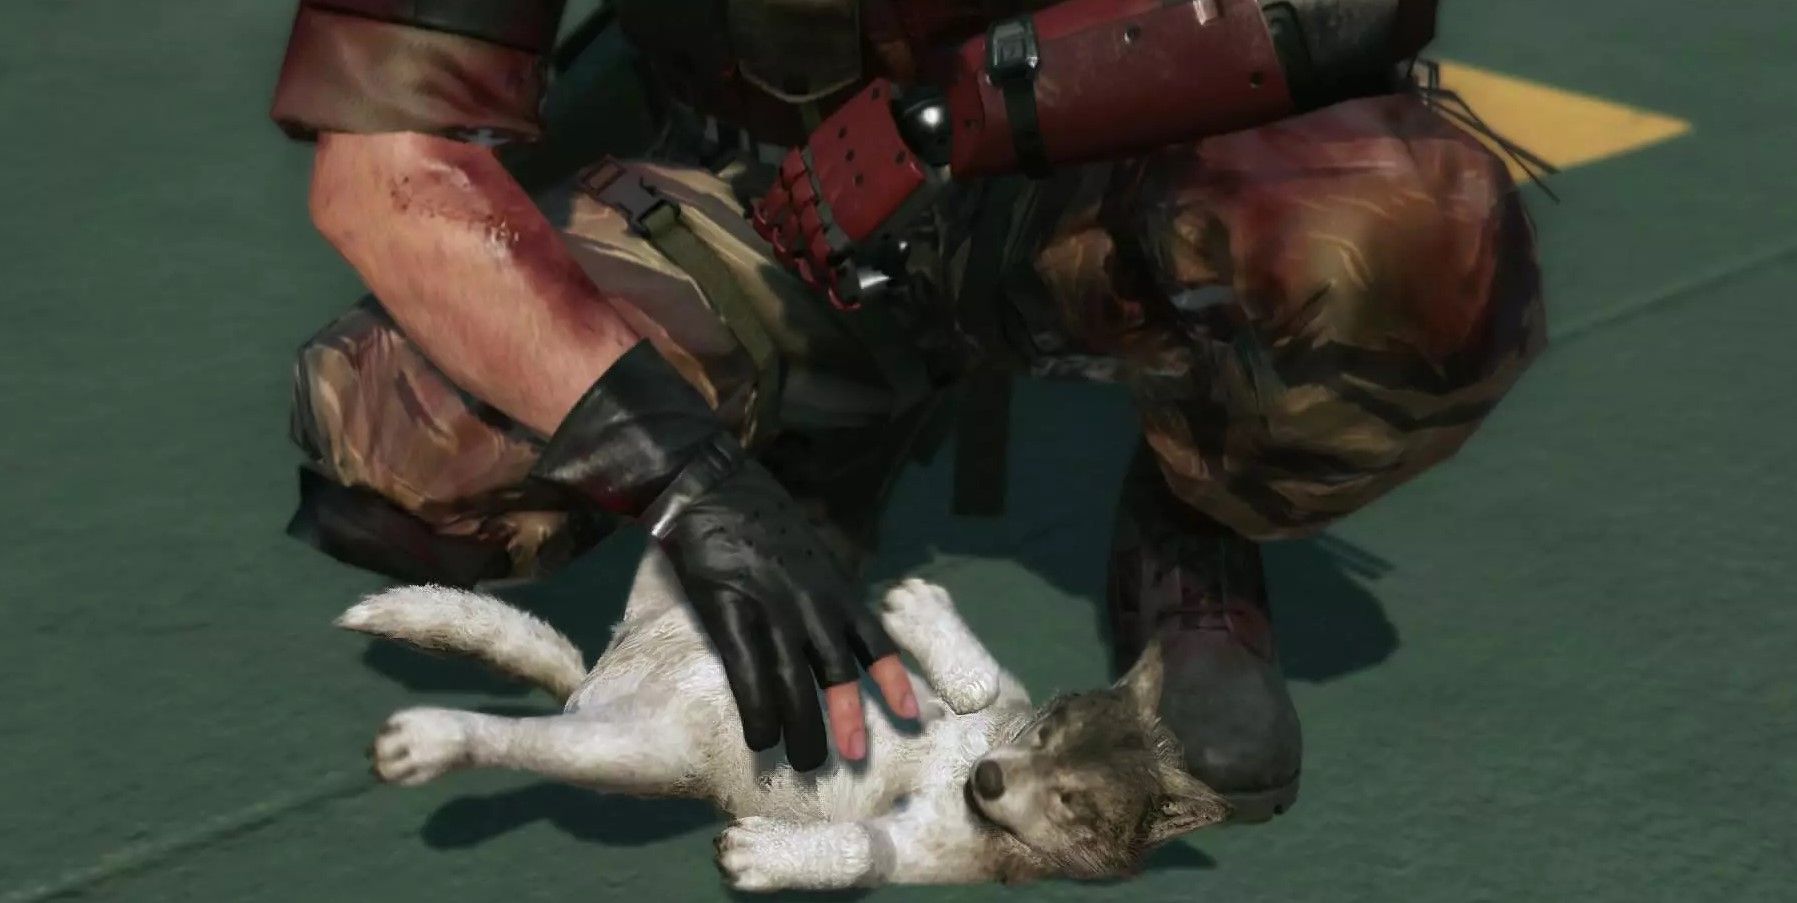 Imaginile evidențiază jocuri care le permit jucătorilor să petreacă câini